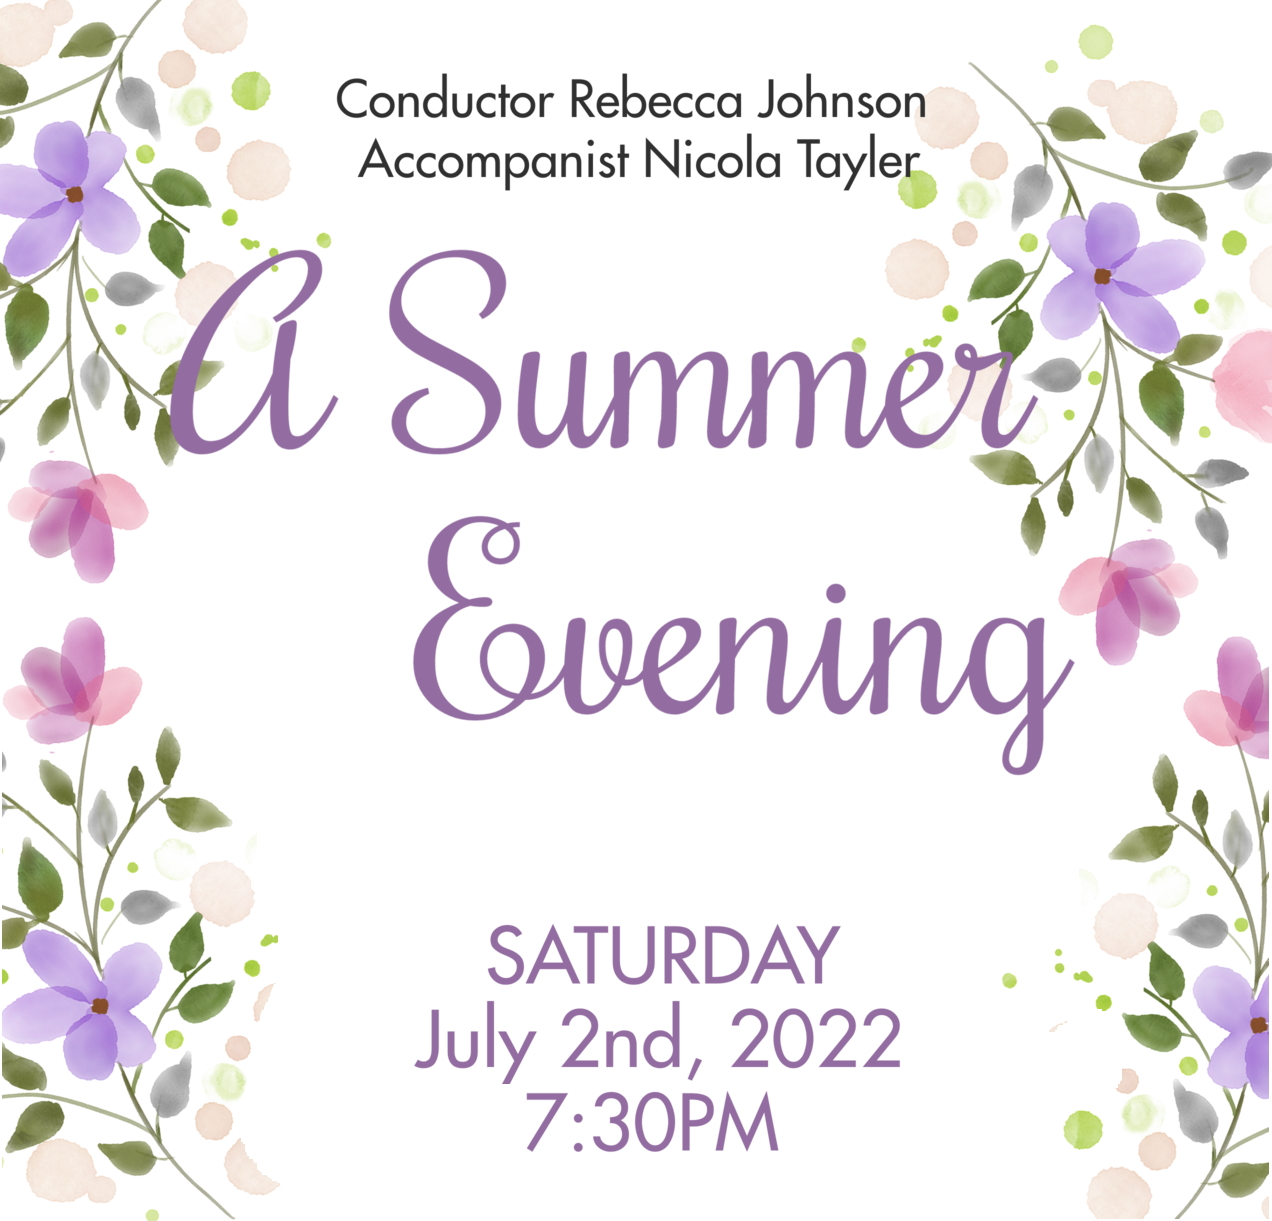 A summer Evening concert